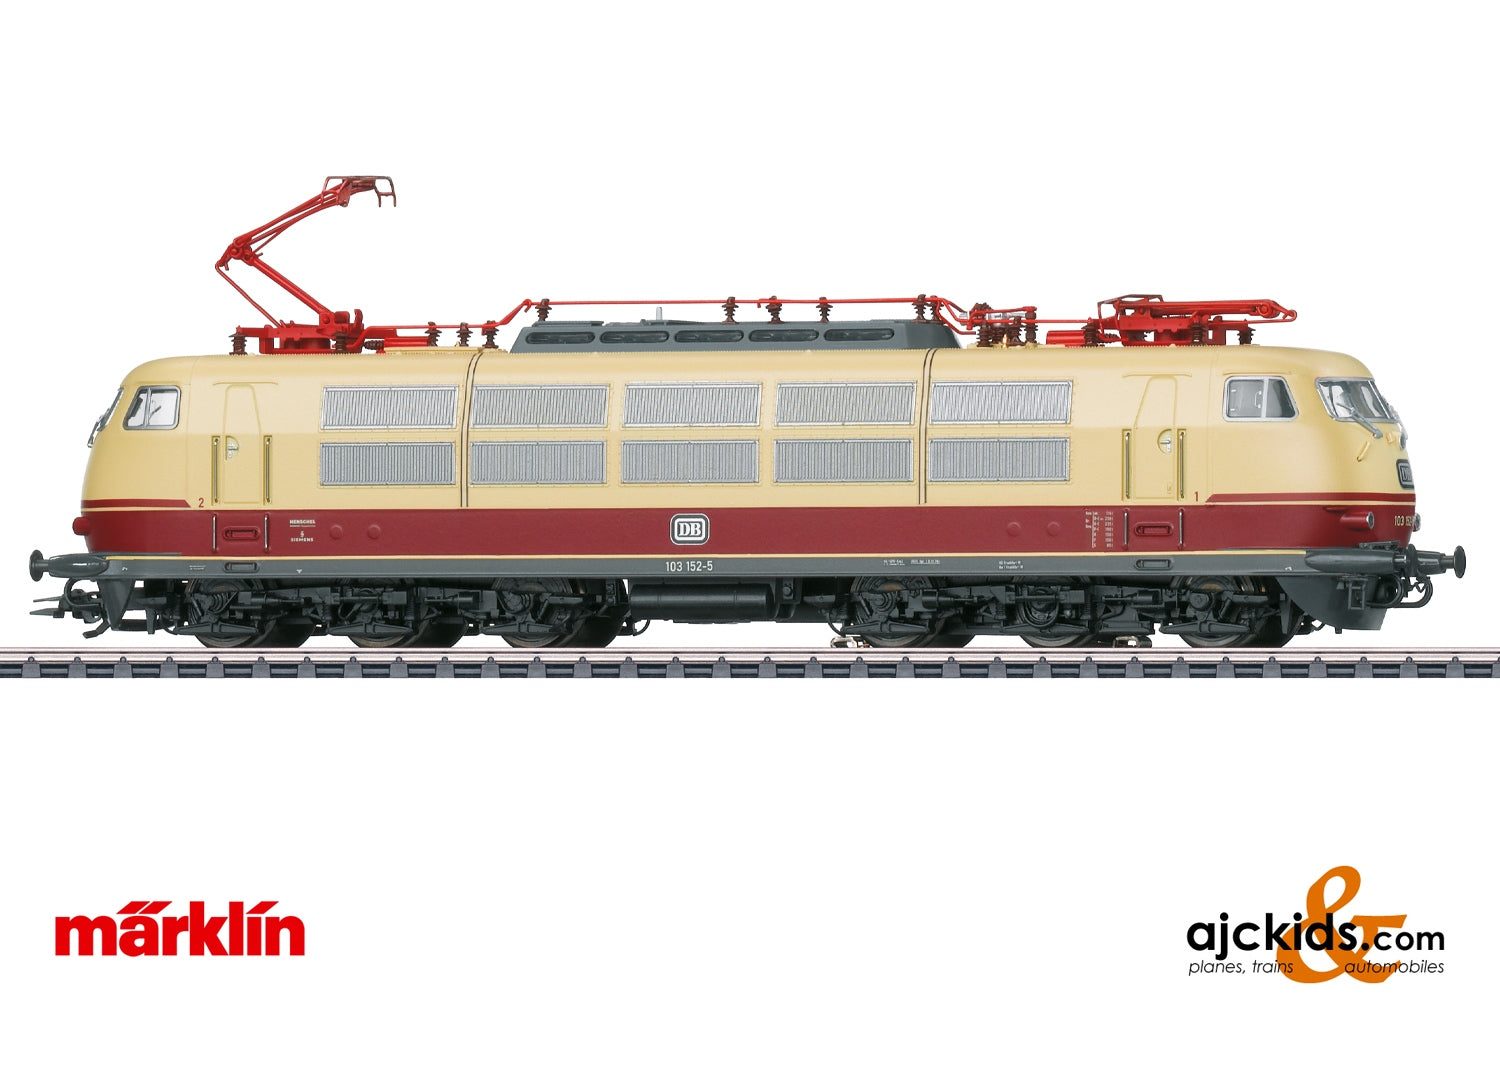 Marklin 39151 DB Class 103 Electric at Ajckids.com